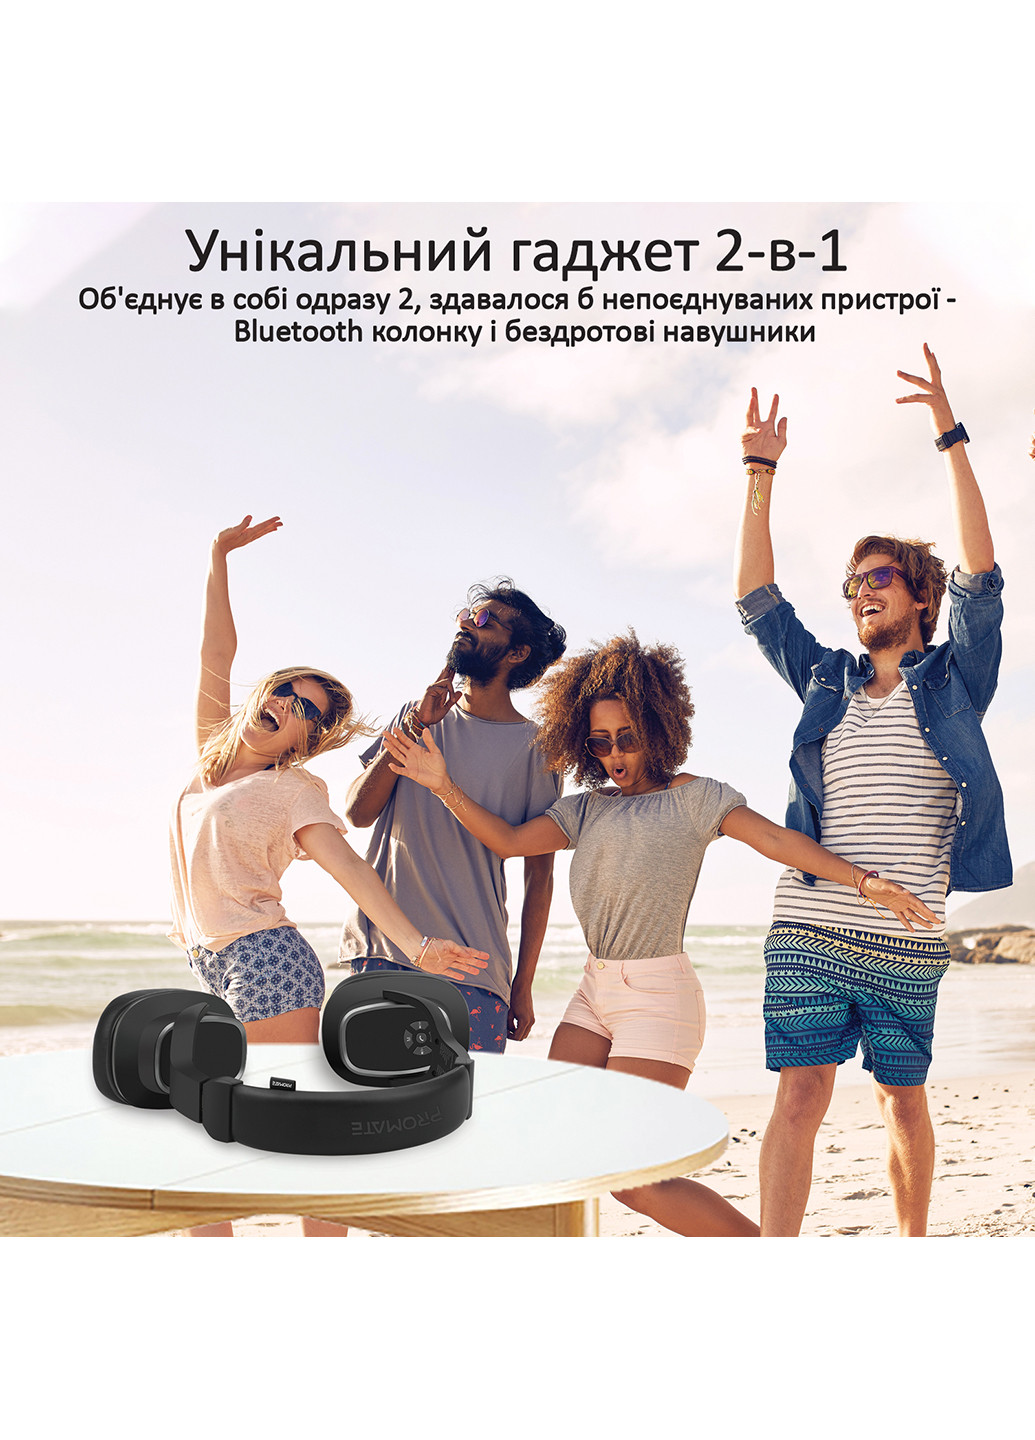 Повнорозмірні Bluetooth навушники Corvin Bluetooth 5 Black () Promate corvin.black (190371001)